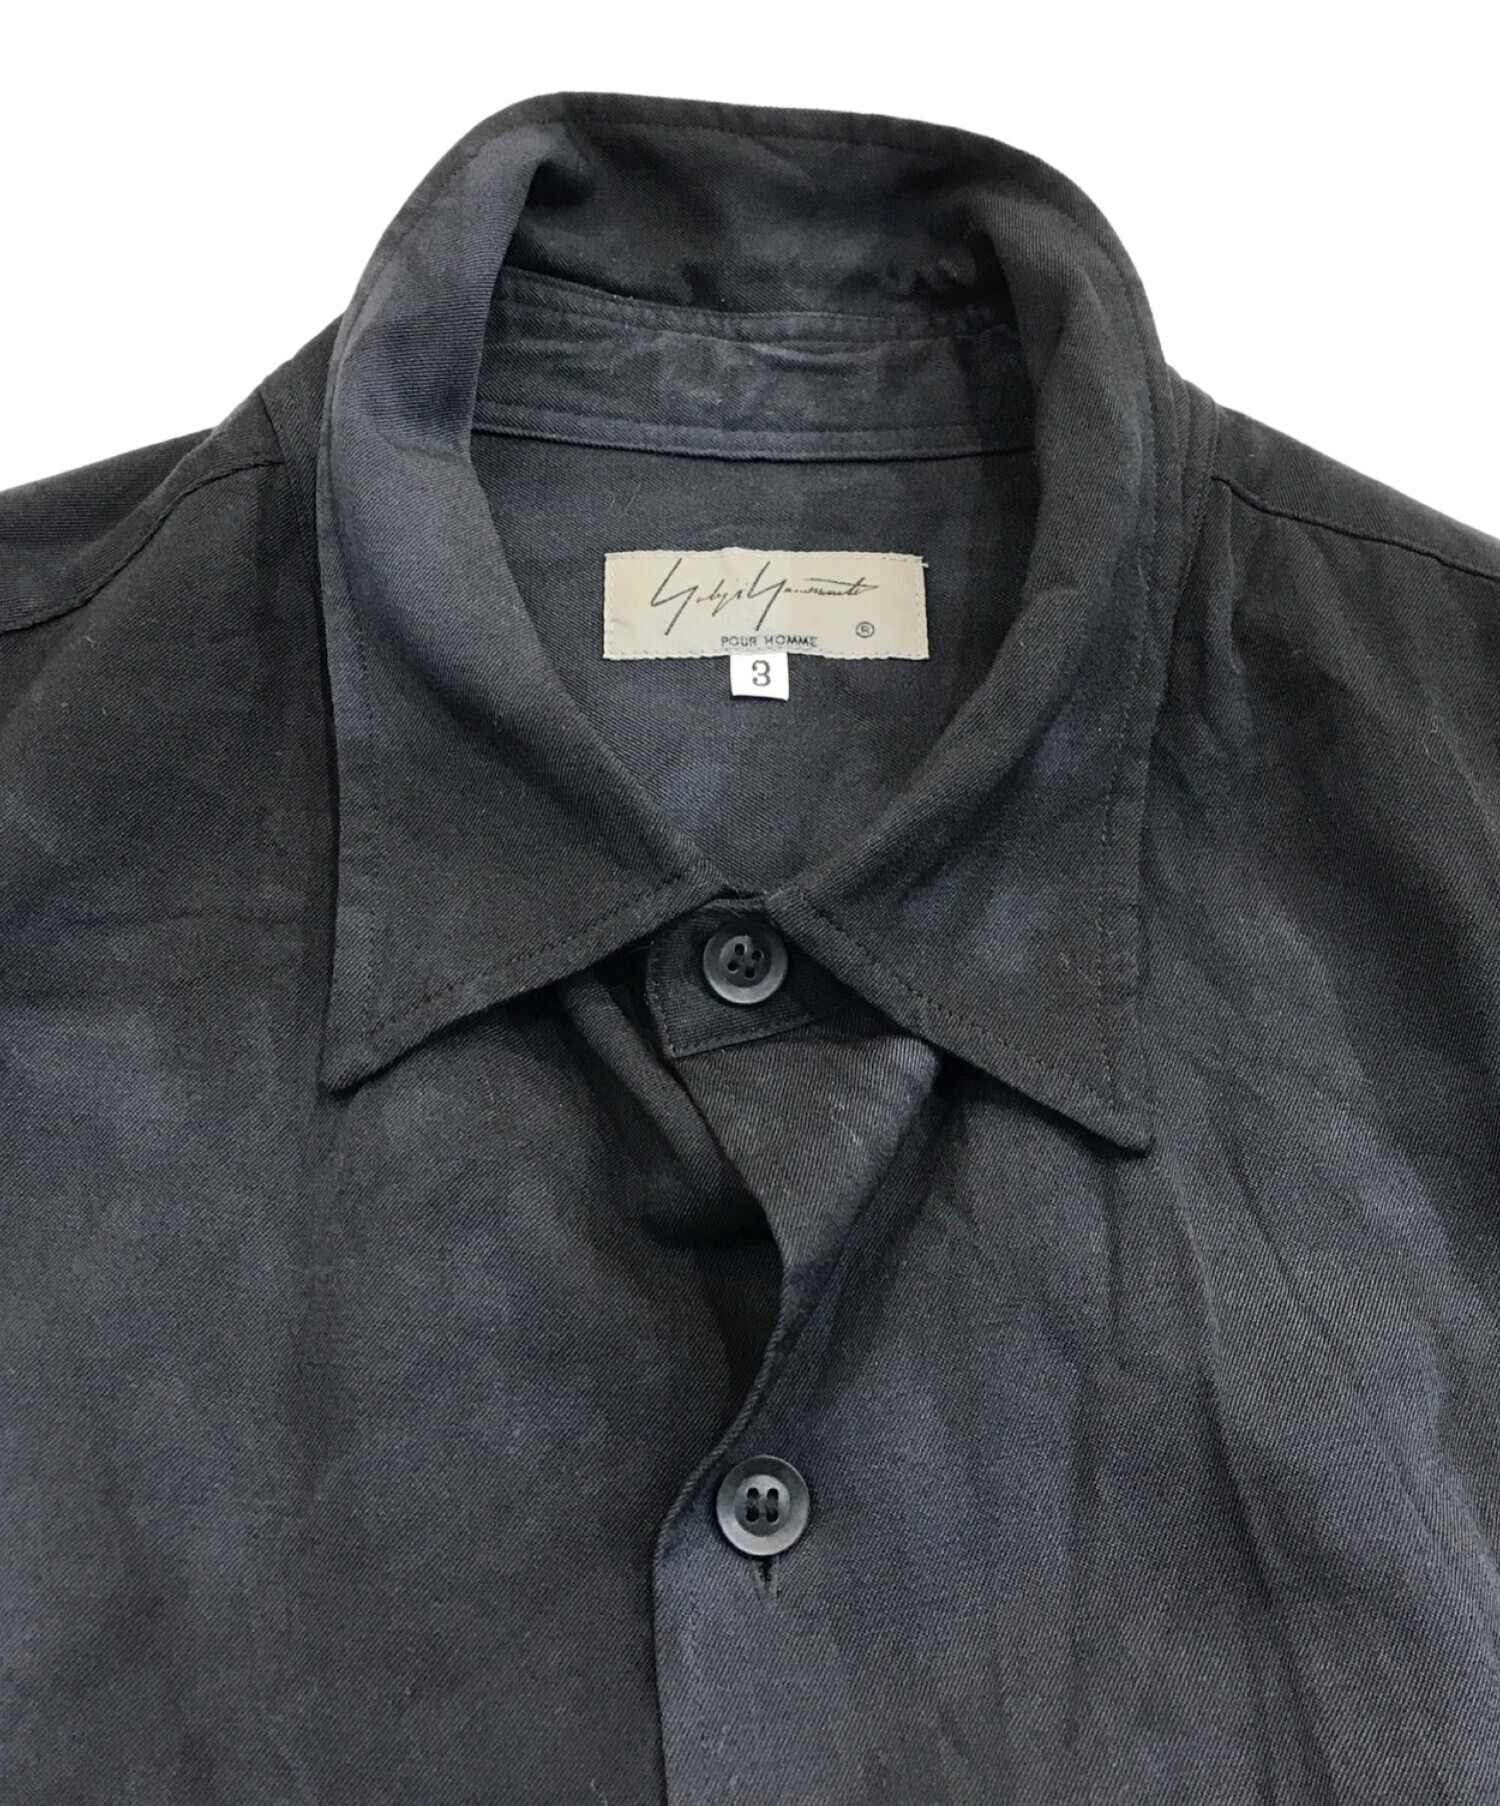 Yohji Yamamoto pour homme (ヨウジヤマモト プールオム) ムラ染めロングシャツ ブラック サイズ:3